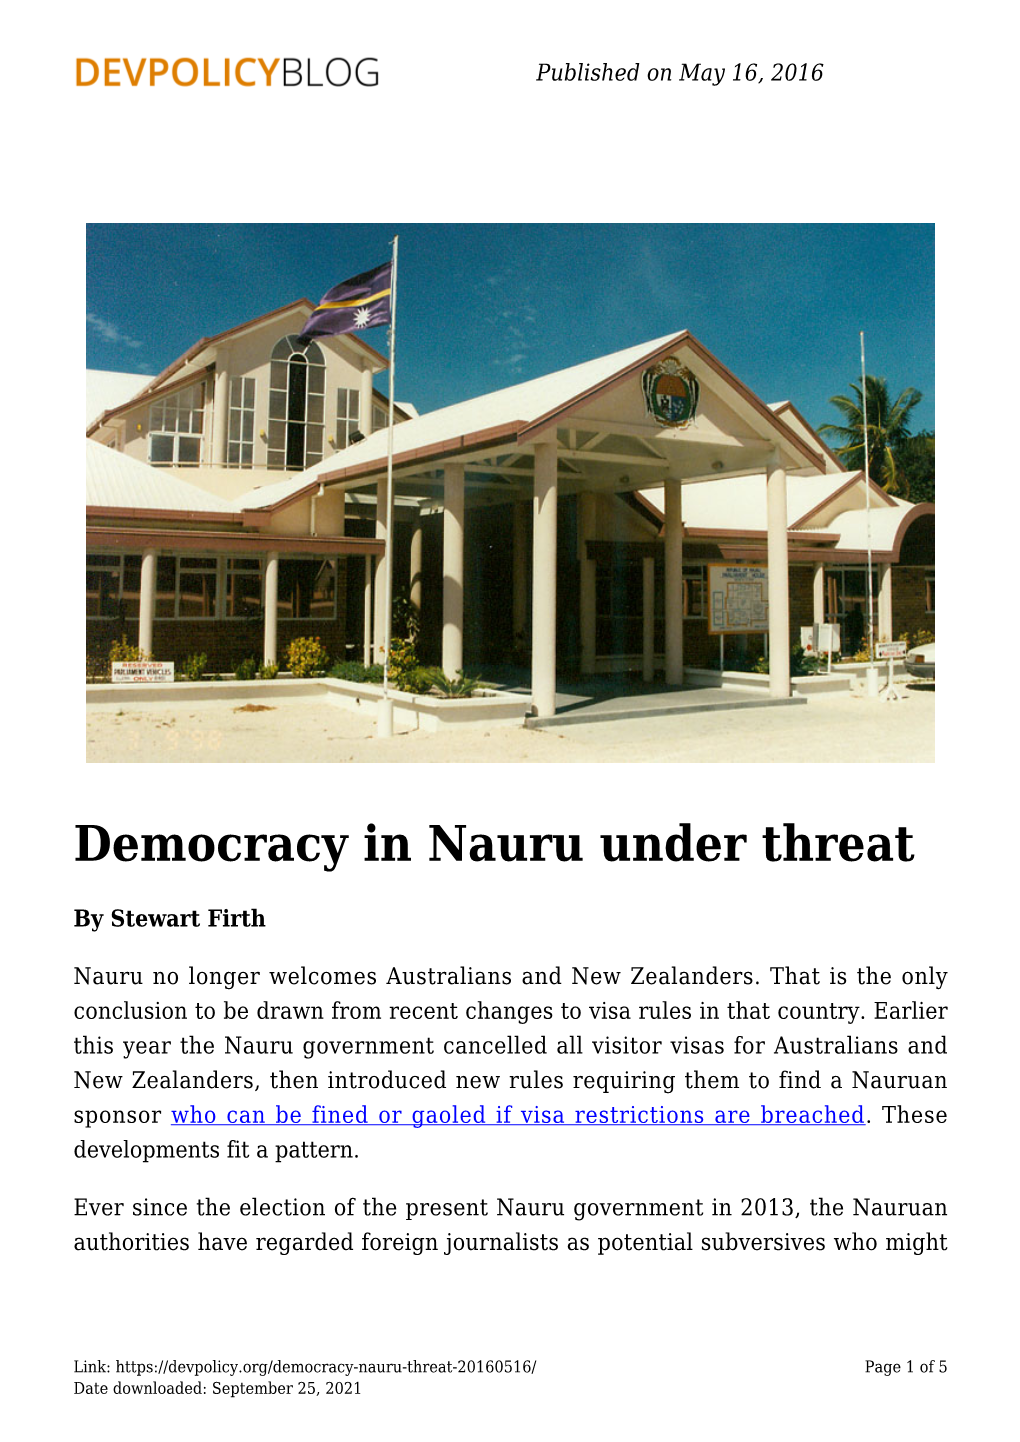 Democracy in Nauru Under Threat